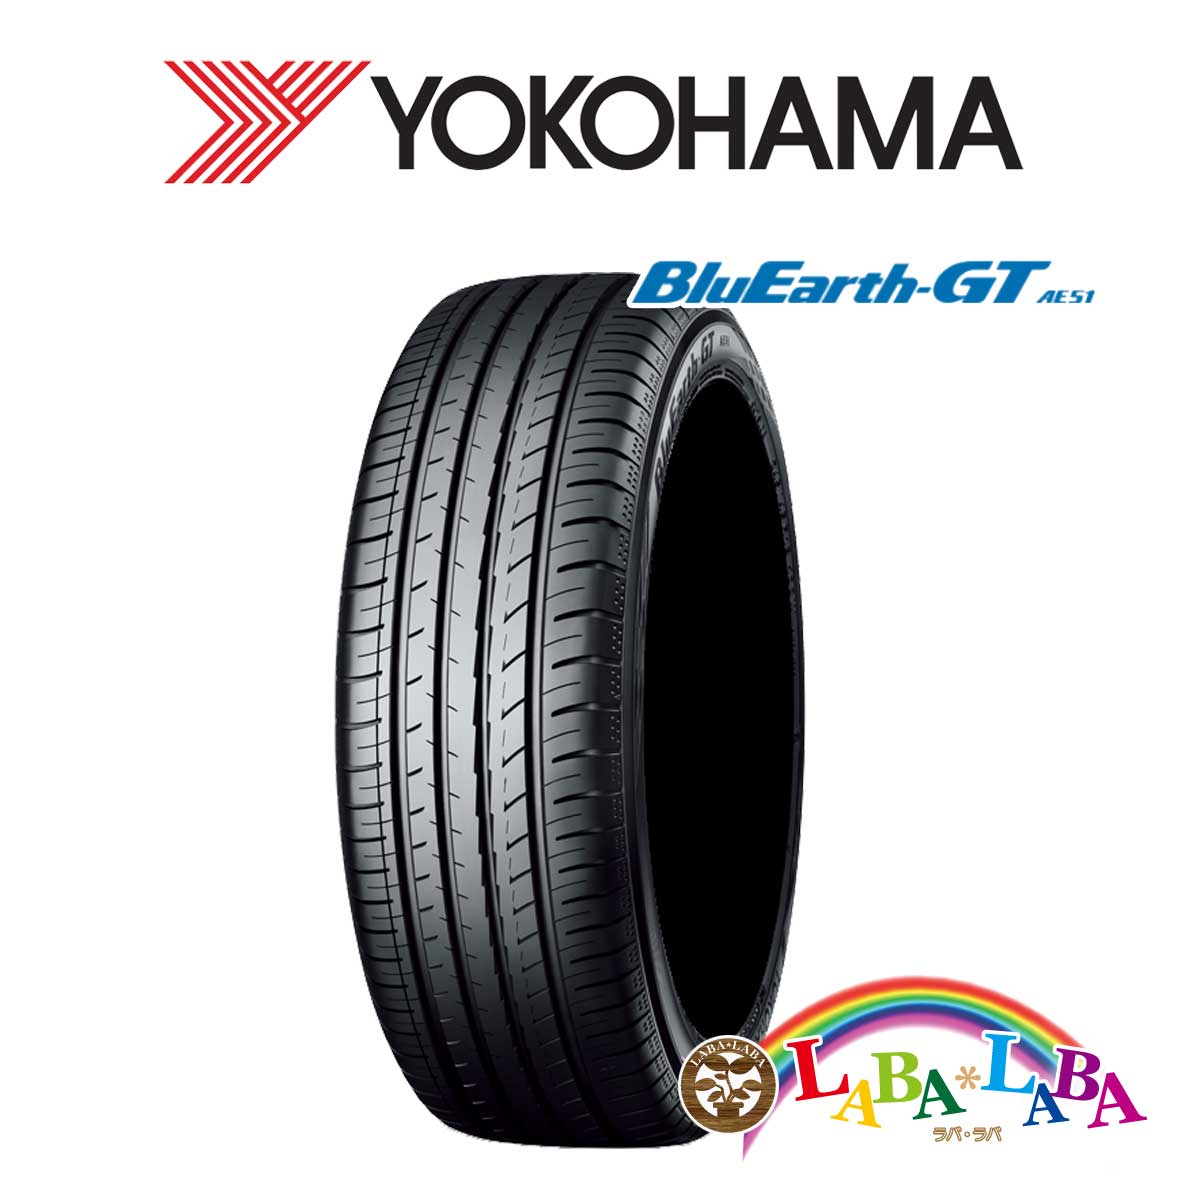 ２本以上送料無料 国産タイヤ サマータイヤ 新品 70％以上節約 百貨店 タイヤのみ YOKOHAMA ヨコハマ XL 40R19 225 AE51 BluEarth-GT 93W ブルーアース